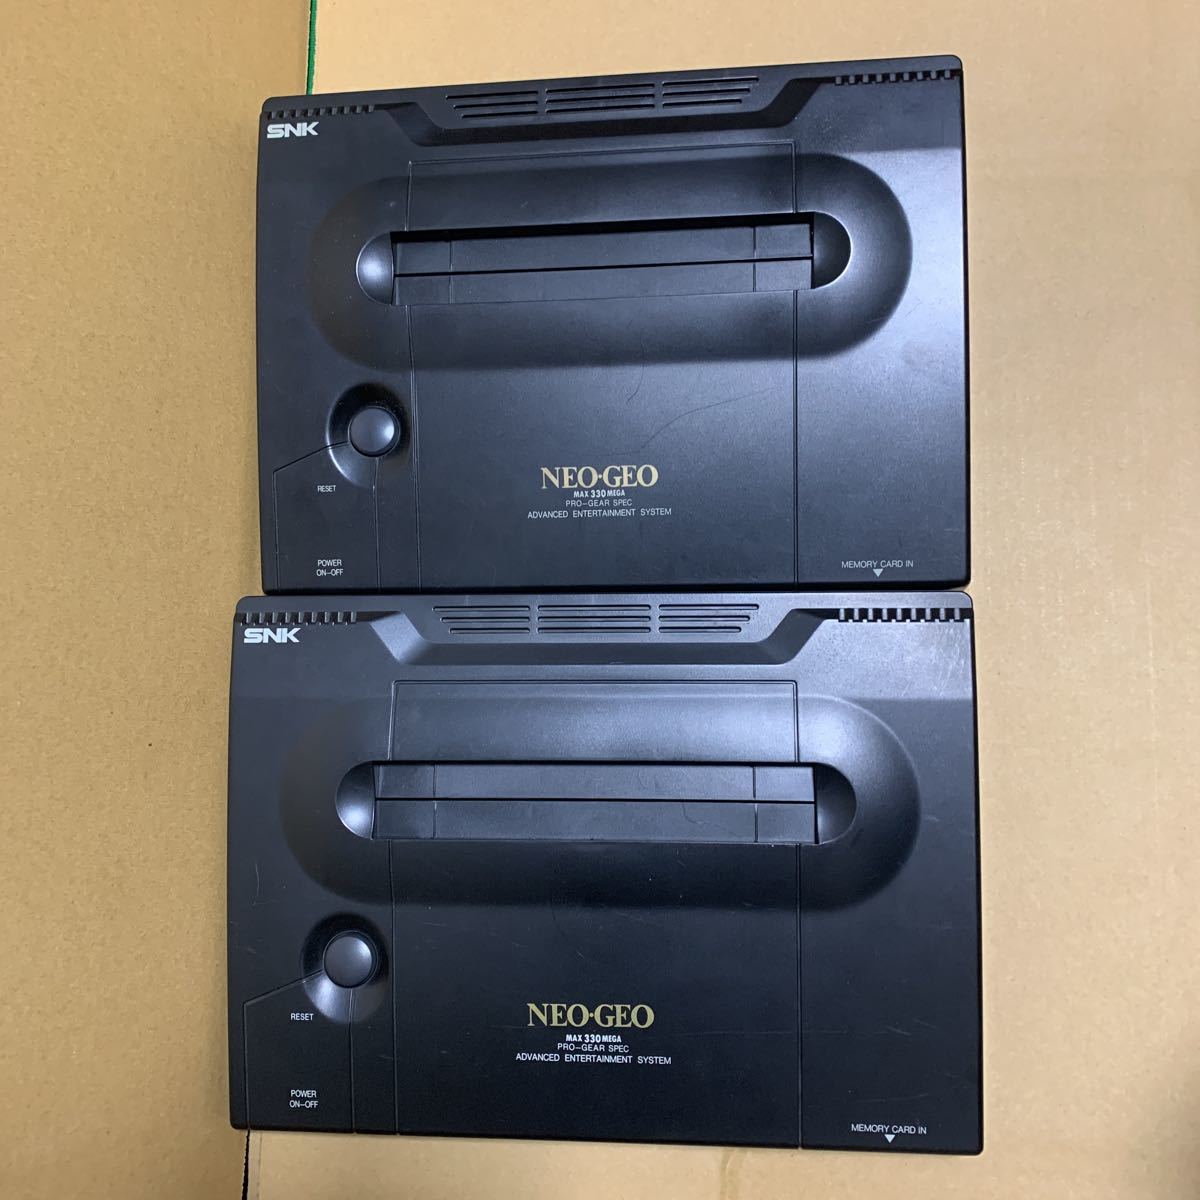 SNK ネオジオ NEO-GEO 本体 ジャンク 2台セット(ネオジオ)｜売買された